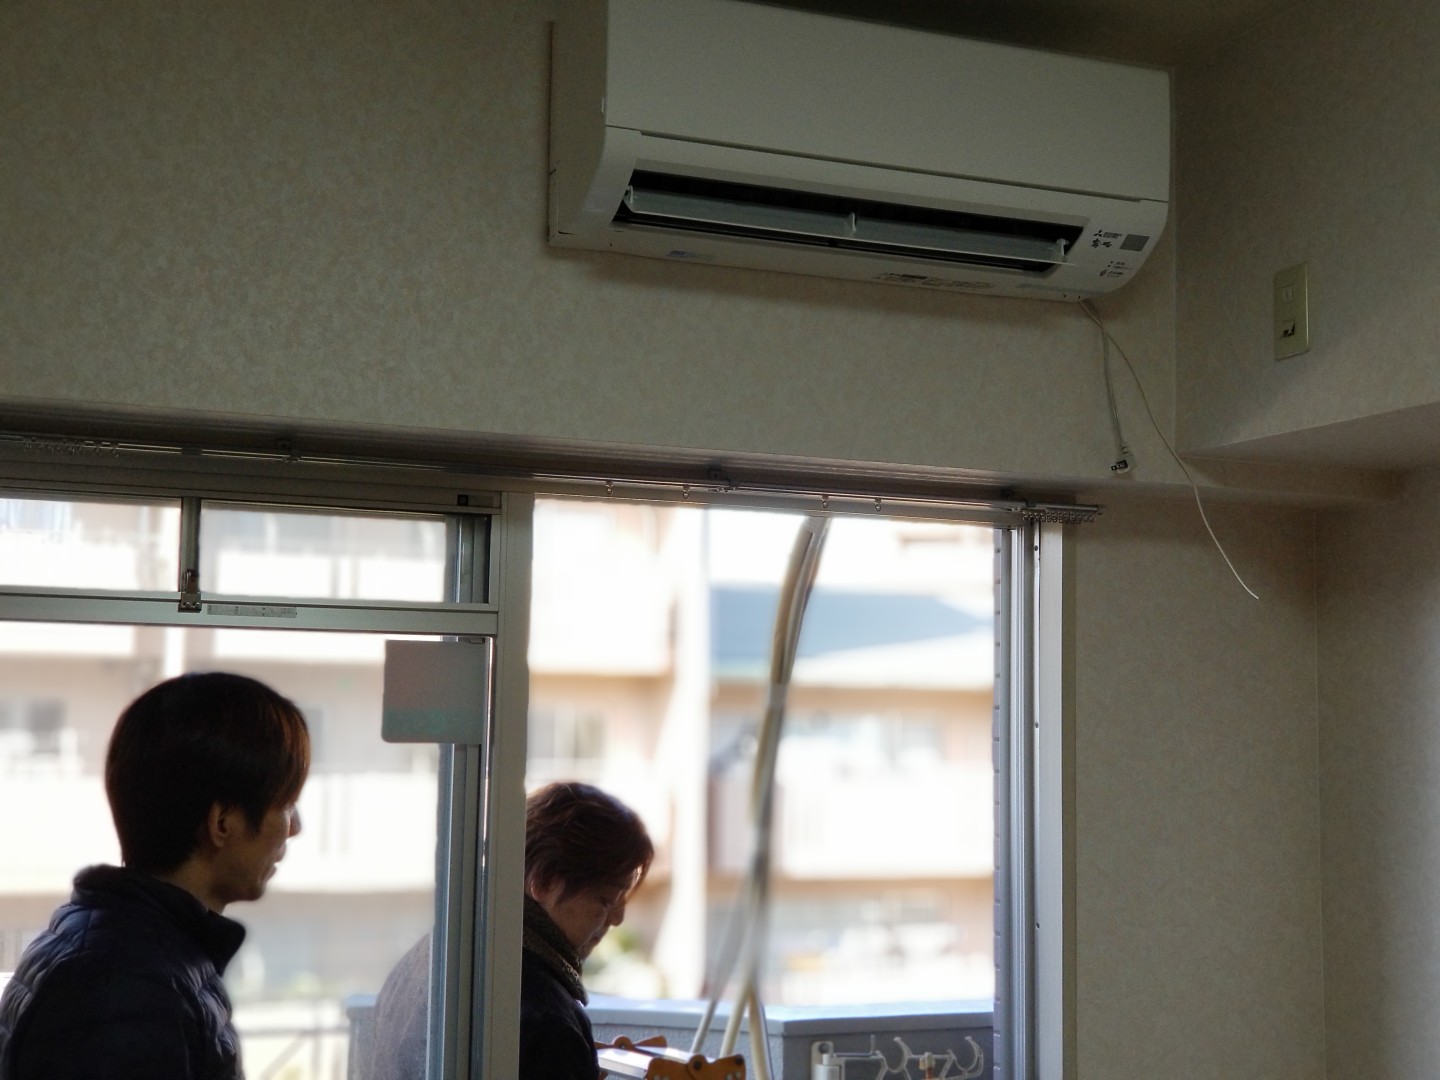 クロス張替時のエアコン事情 ユーキの活動日誌 名古屋の電気 空調